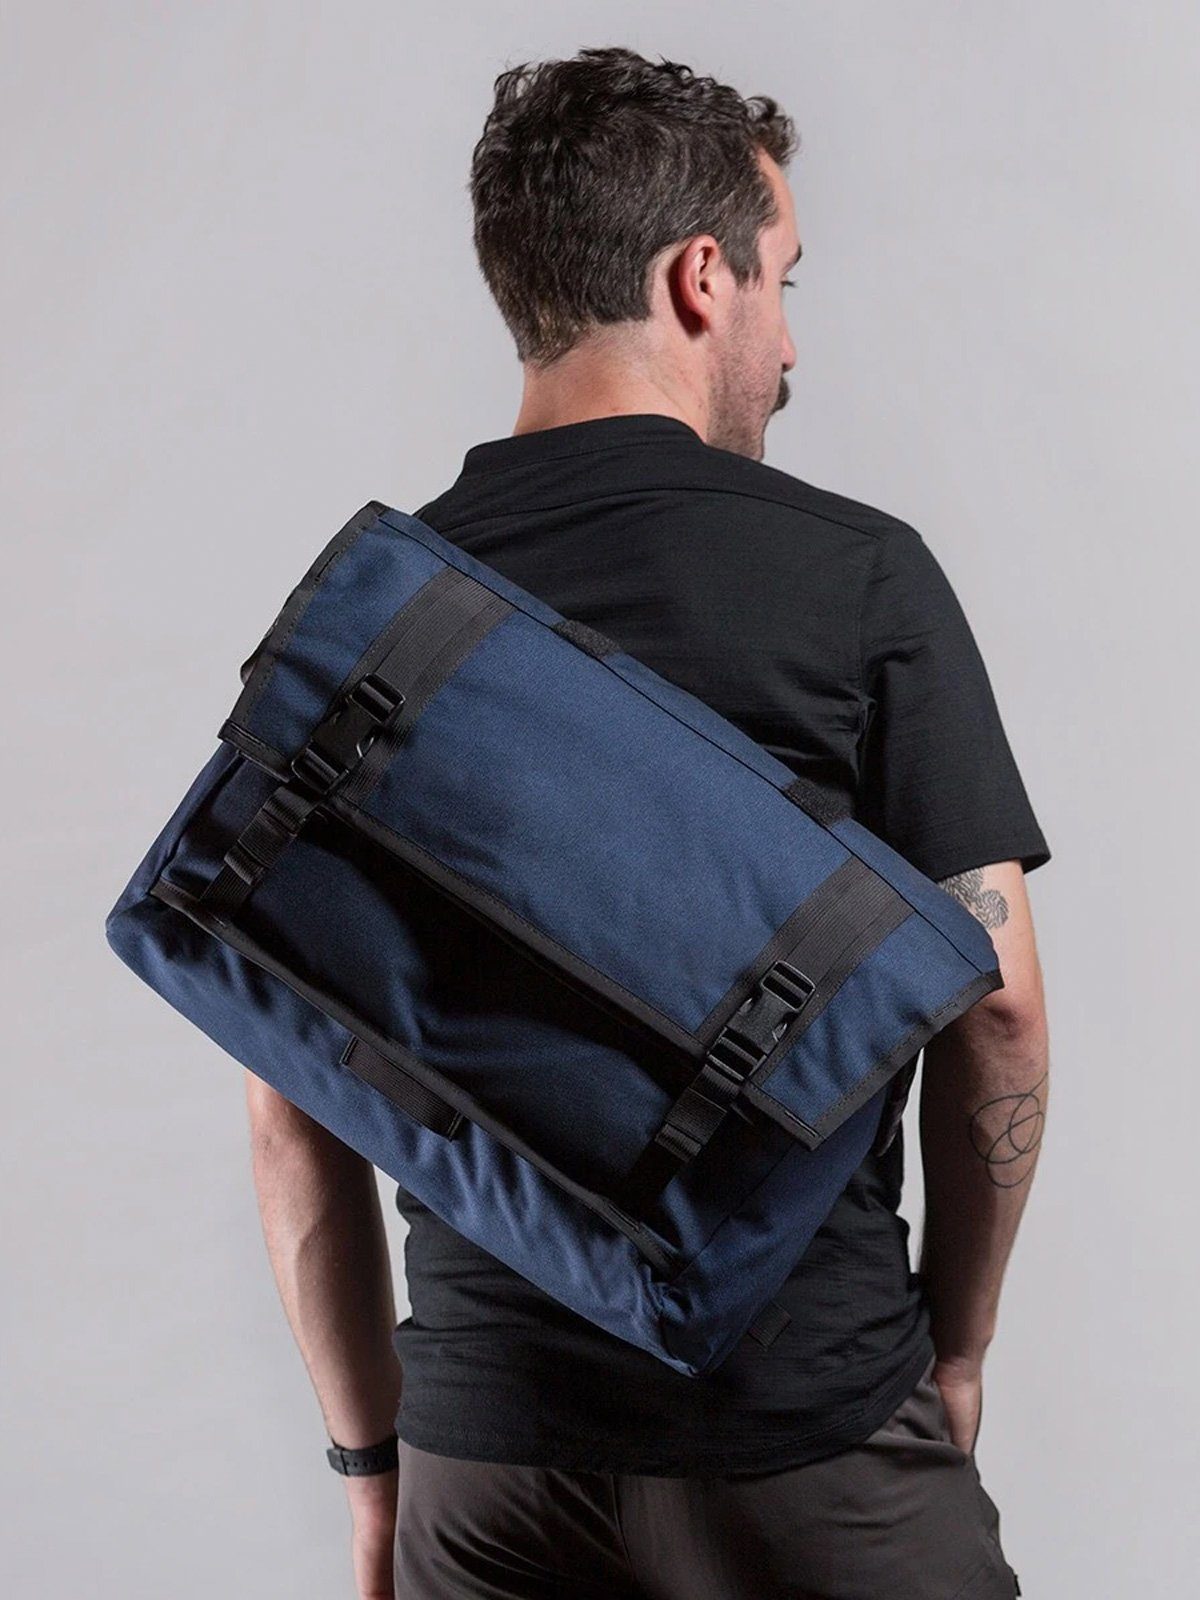 Rummy by Mission Workshop - Weersbestendige tassen & technische kleding - San Francisco & Los Angeles - Gemaakt om lang mee te gaan - Voor altijd gegarandeerd